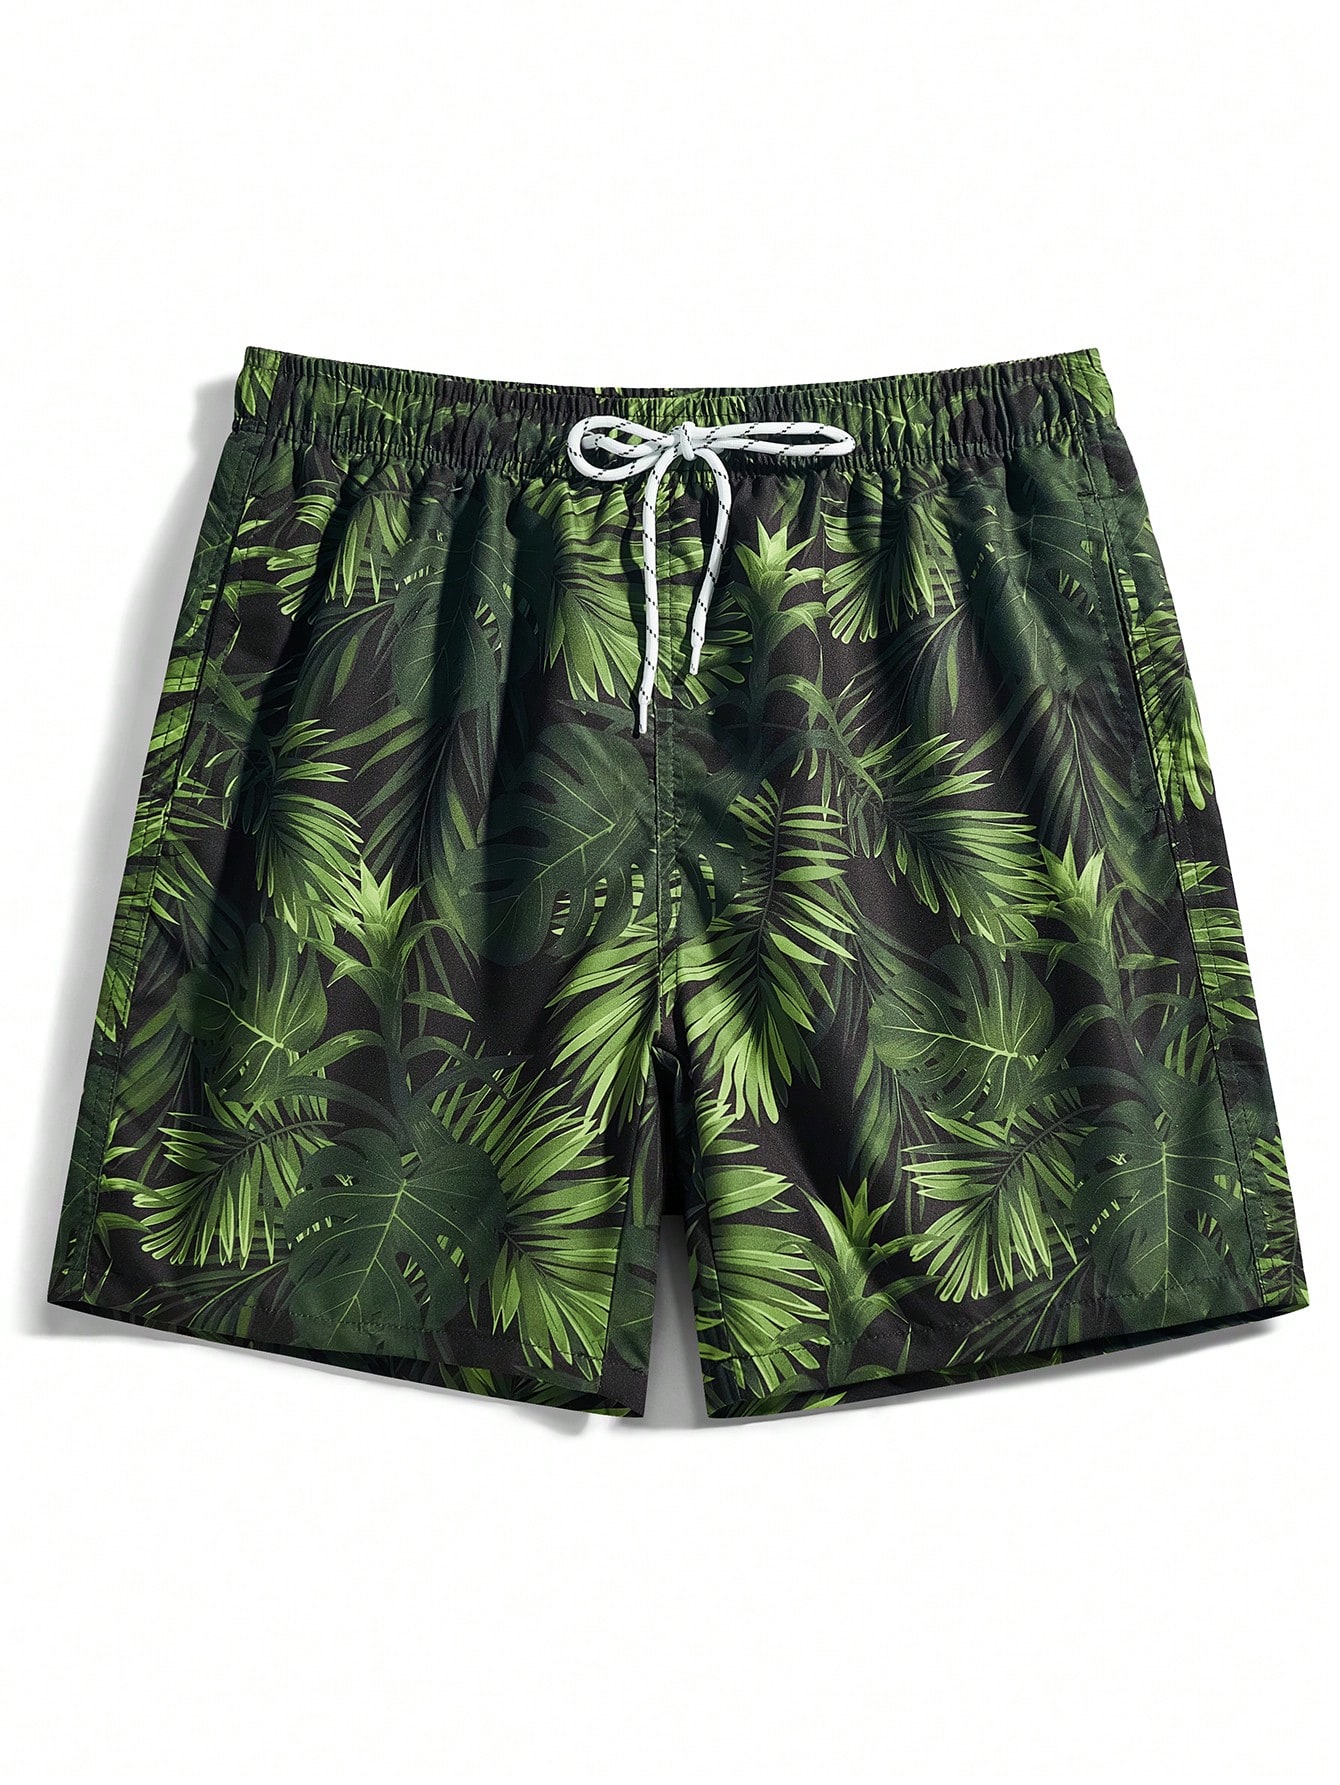 Мужские пляжные шорты Manfinity с тропическим принтом и завязками на талии, армейский зеленый